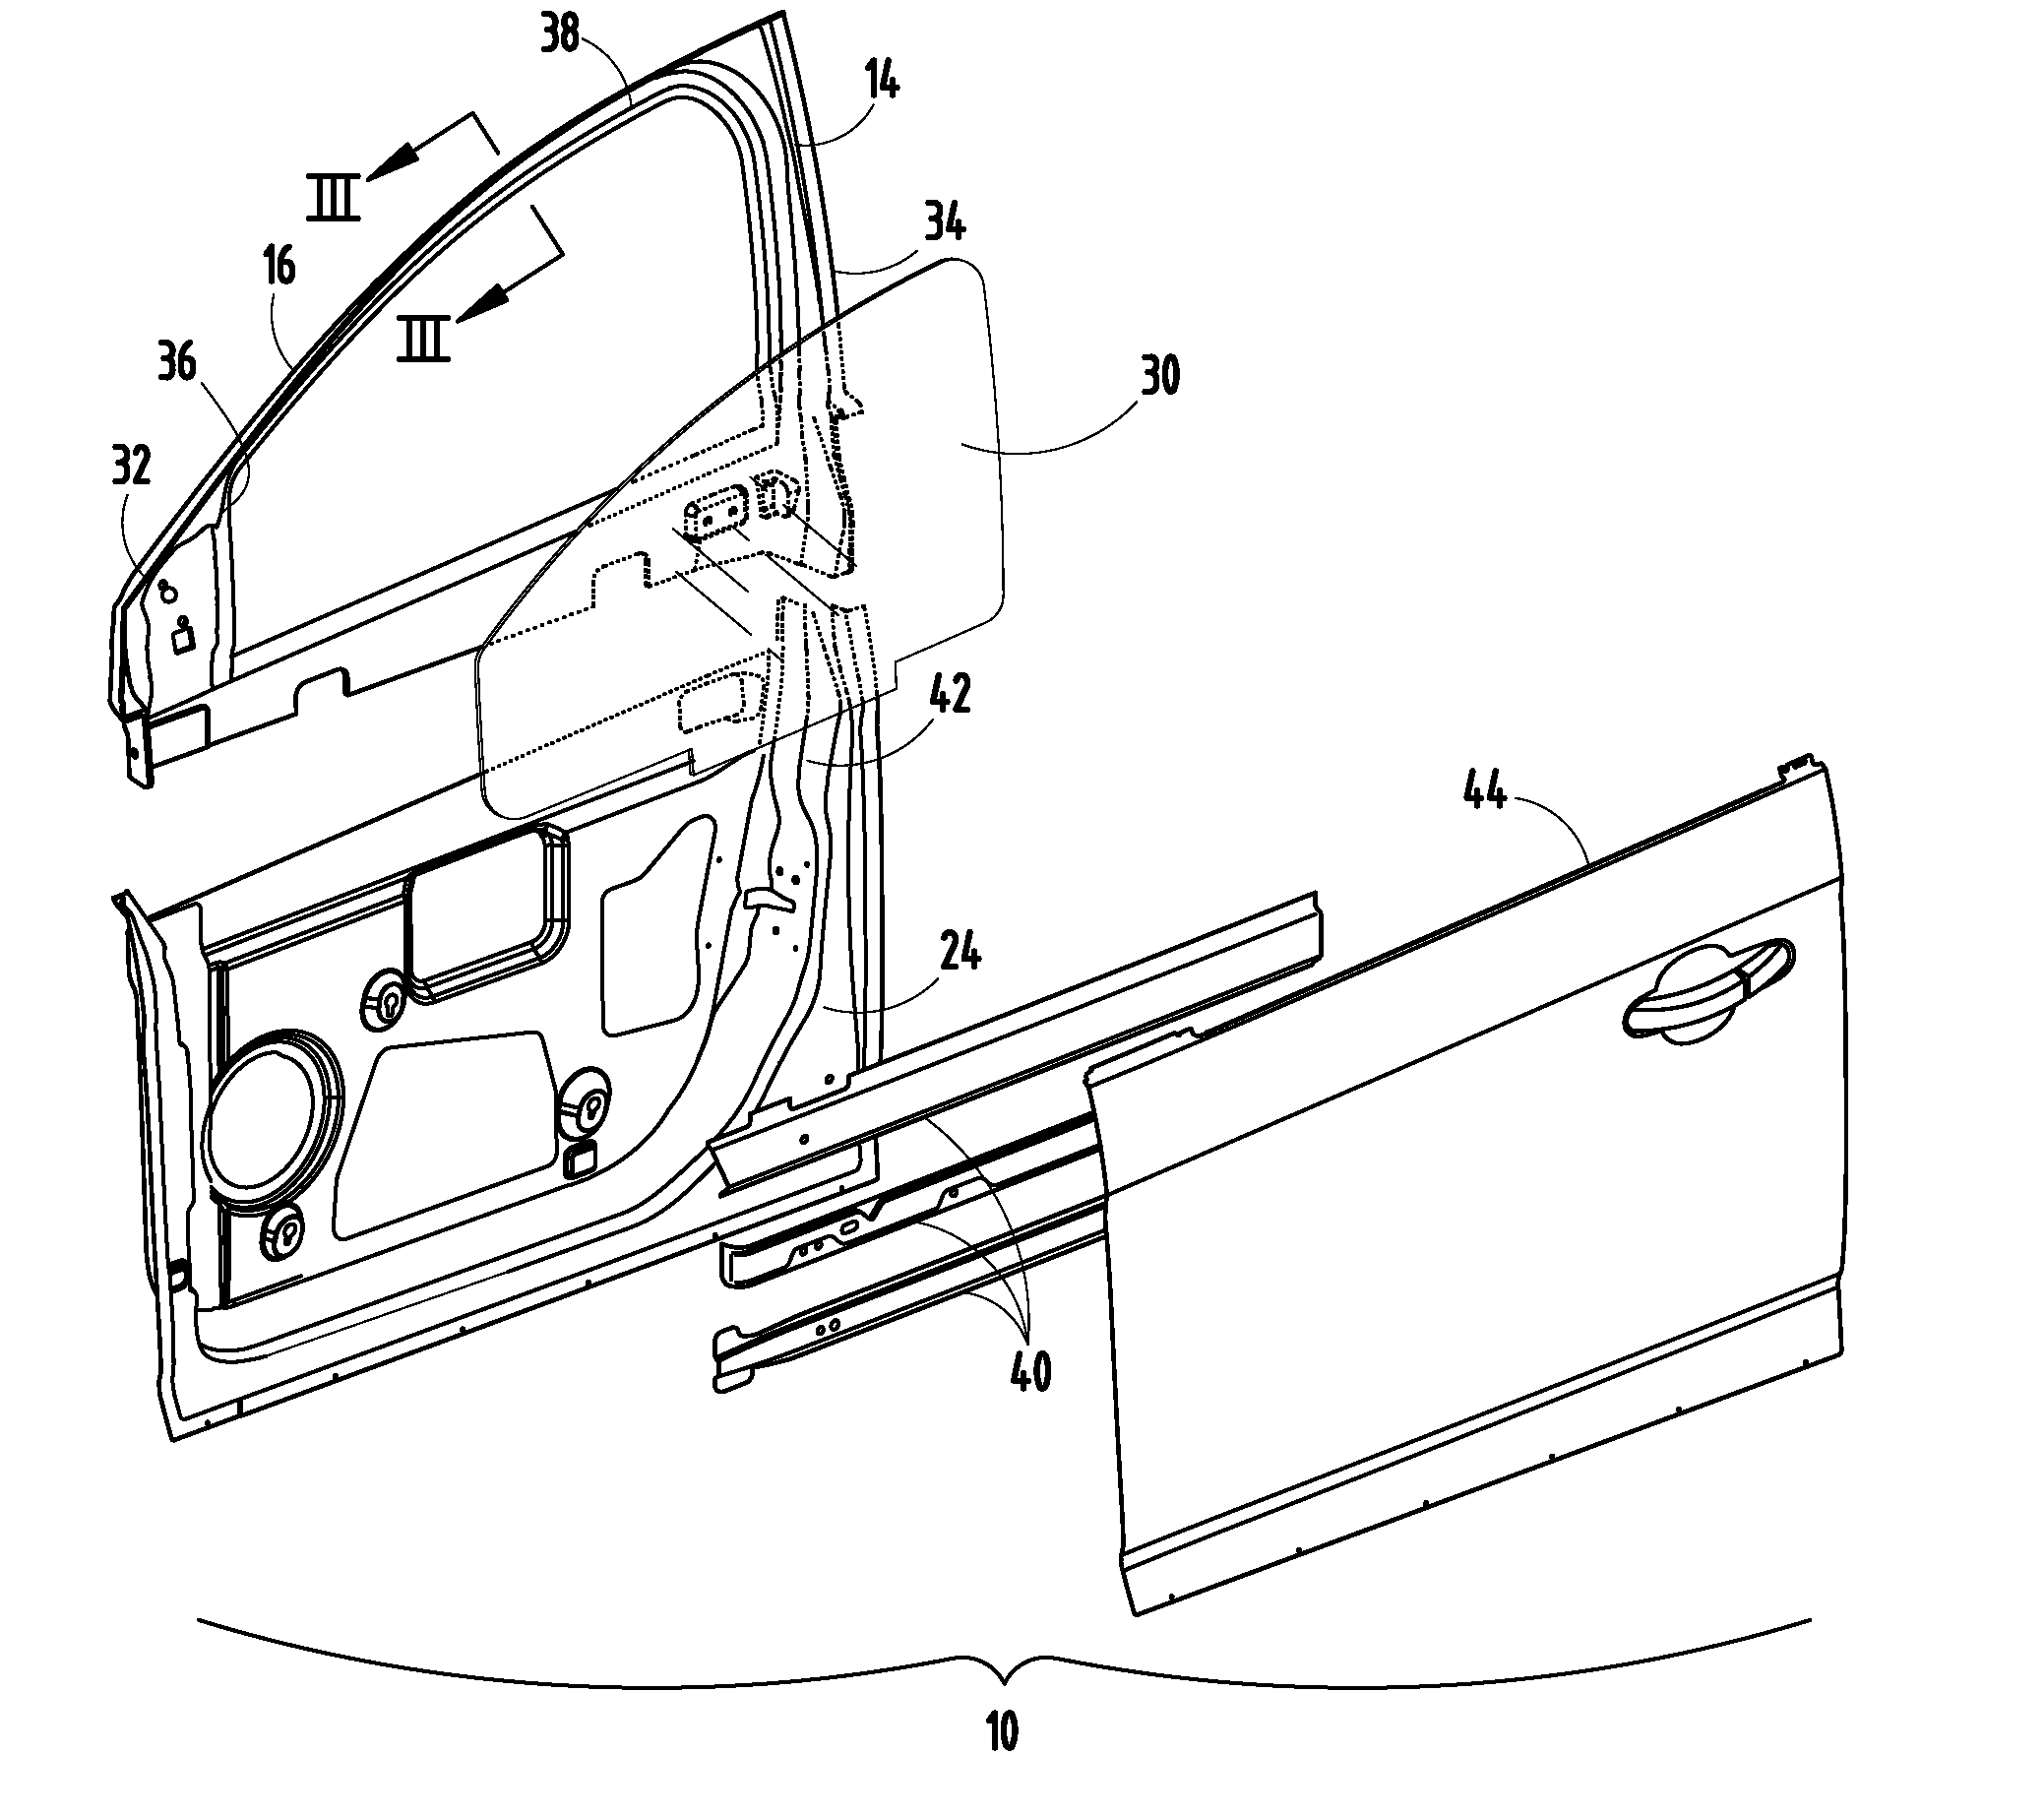 Inner panel design for automotive door header